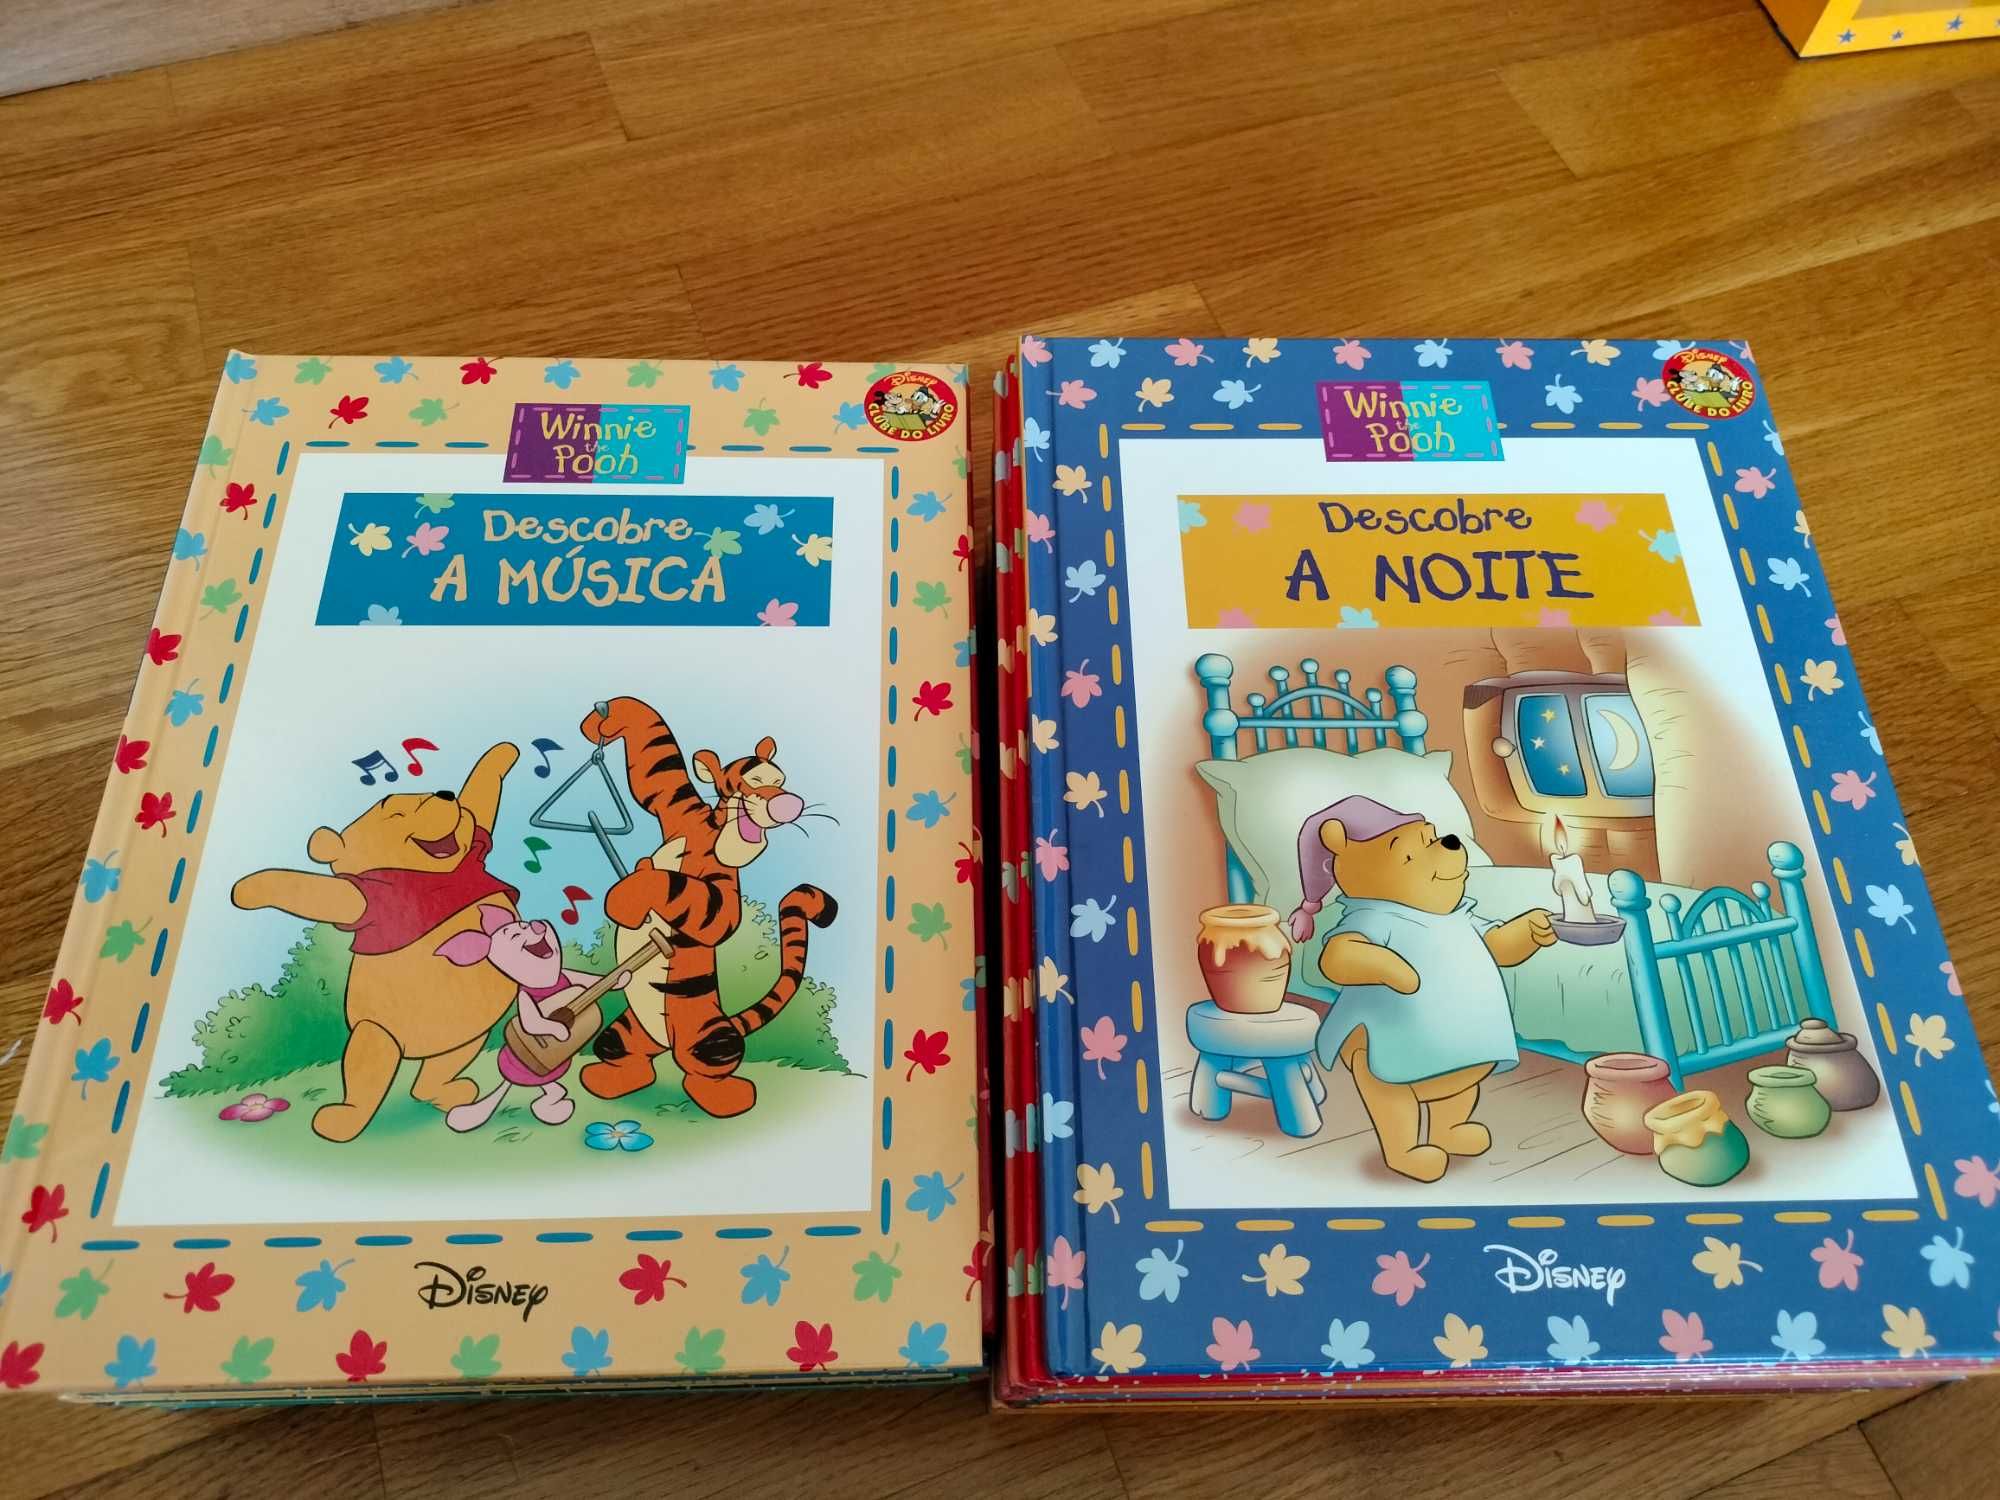 Coleção Livros "Winnie the Pooh" da Disney